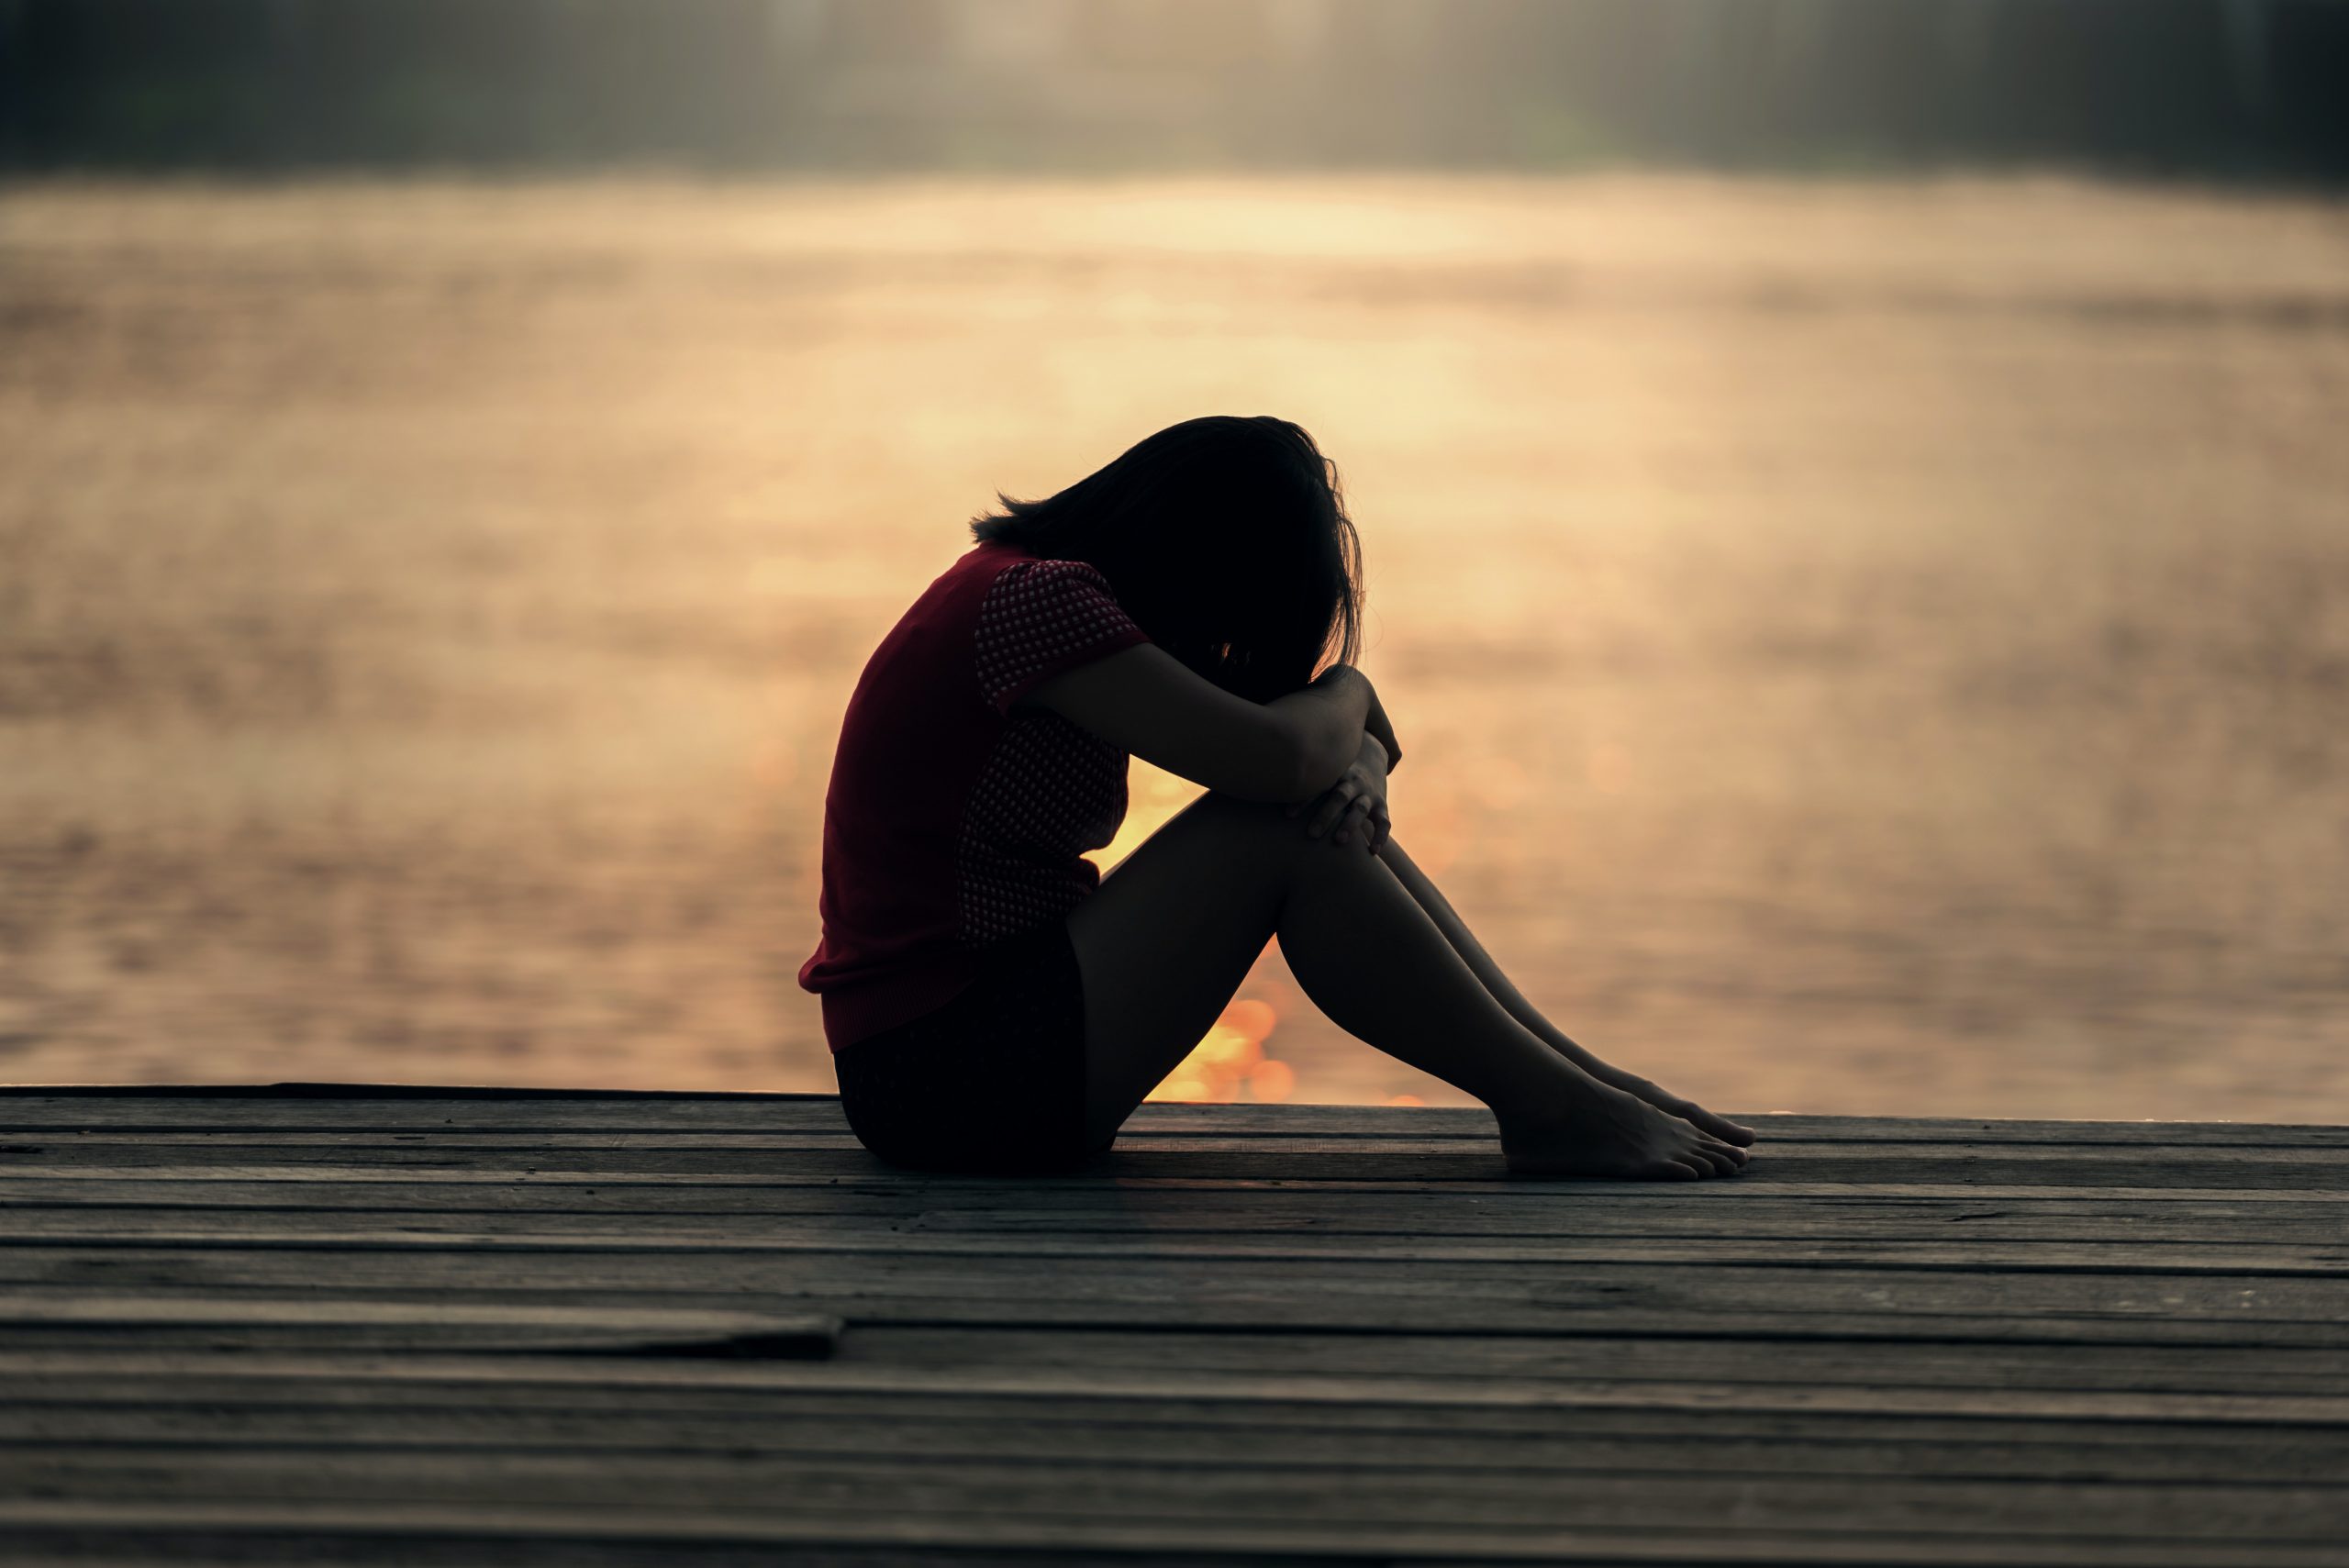 Los 8 signos más evidentes de la depresión